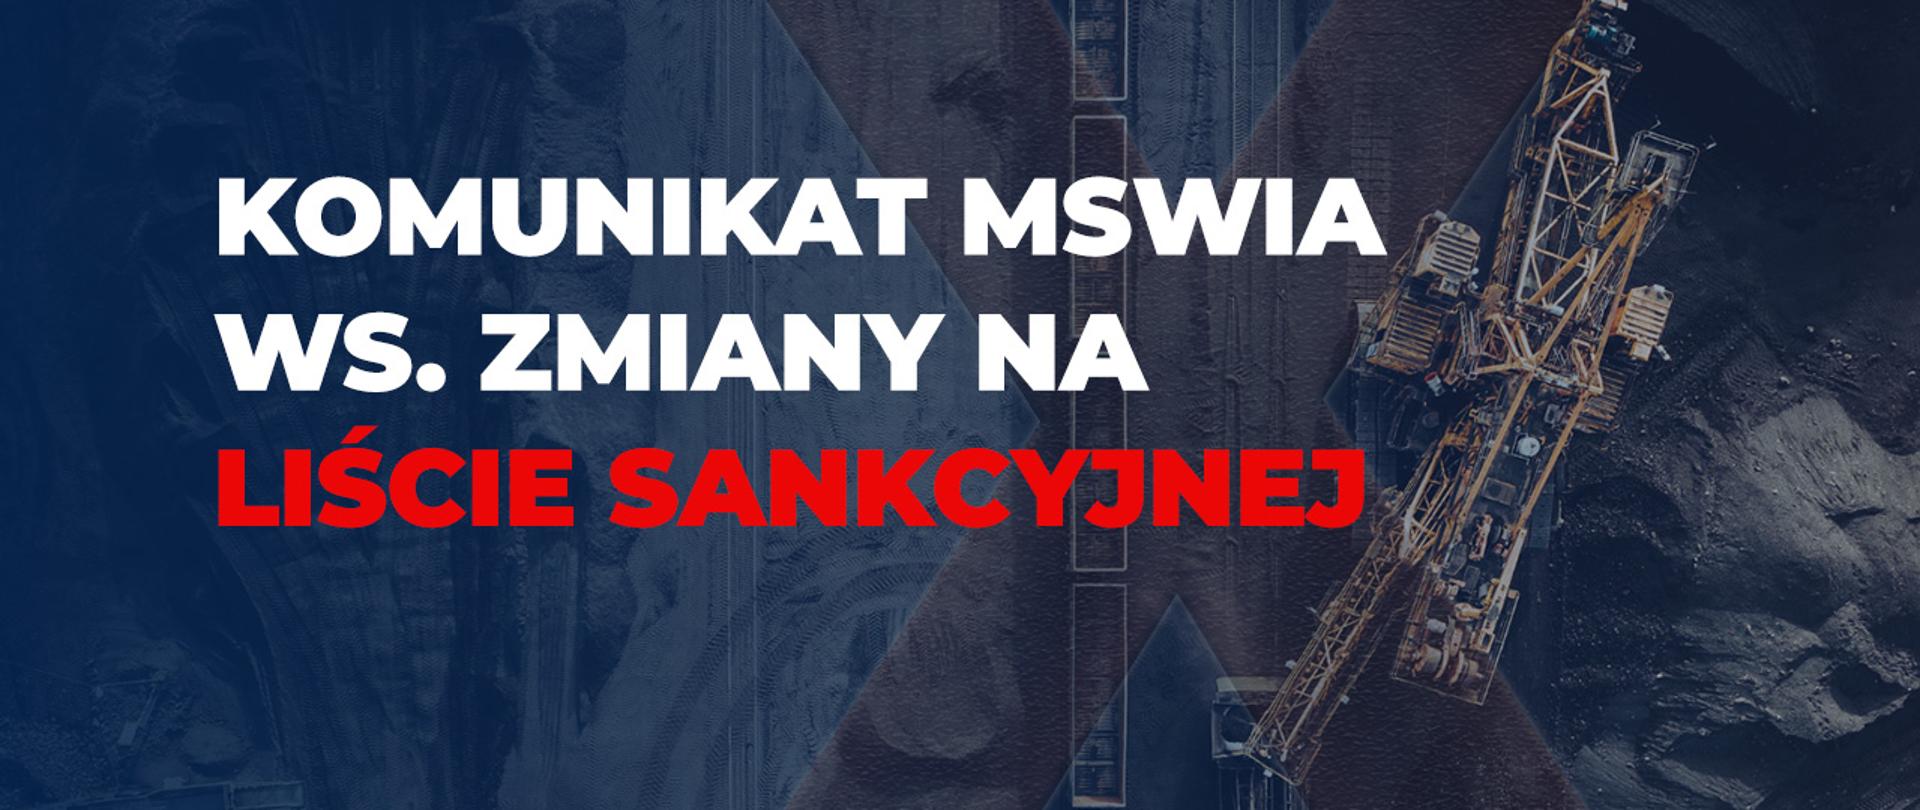 Komunikat MSWiA ws. zmiany na liście sankcyjnej